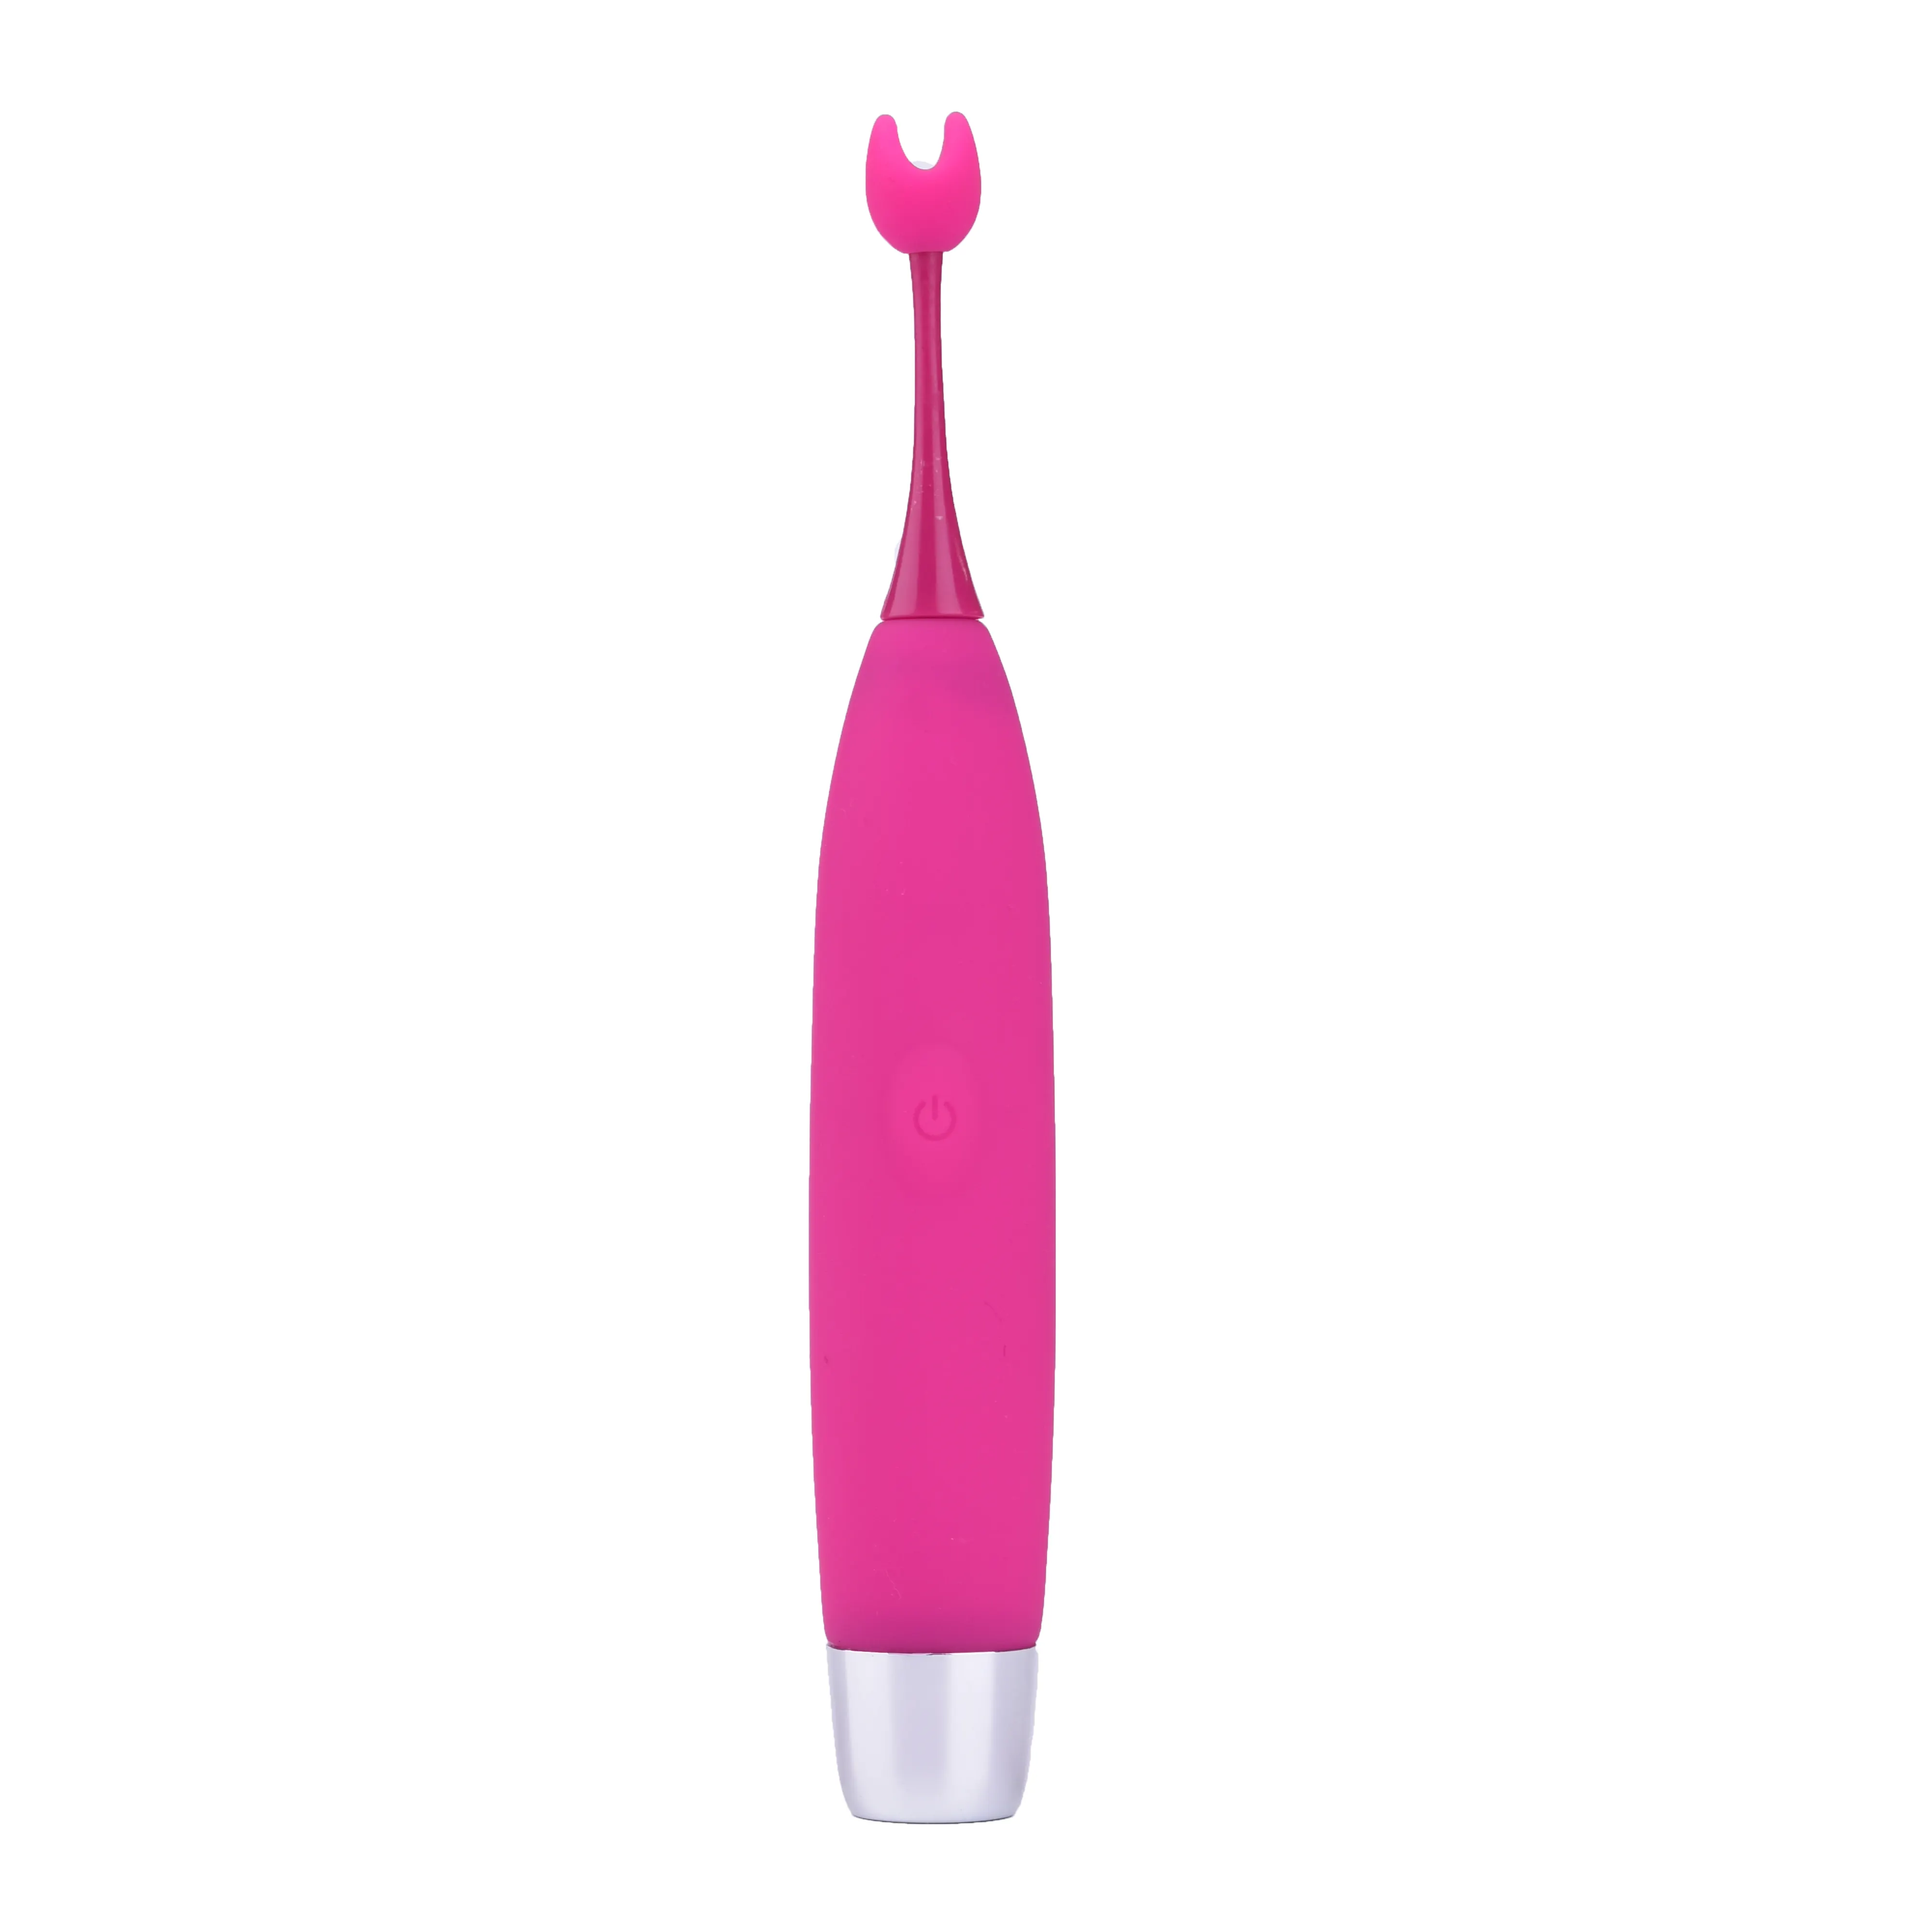 Kalem şekilli çift yaratıcı silikon sürpriz hediye su geçirmez şarj edilebilir Anal vajina yapay penis vibratör seks oyuncakları kadınlar için